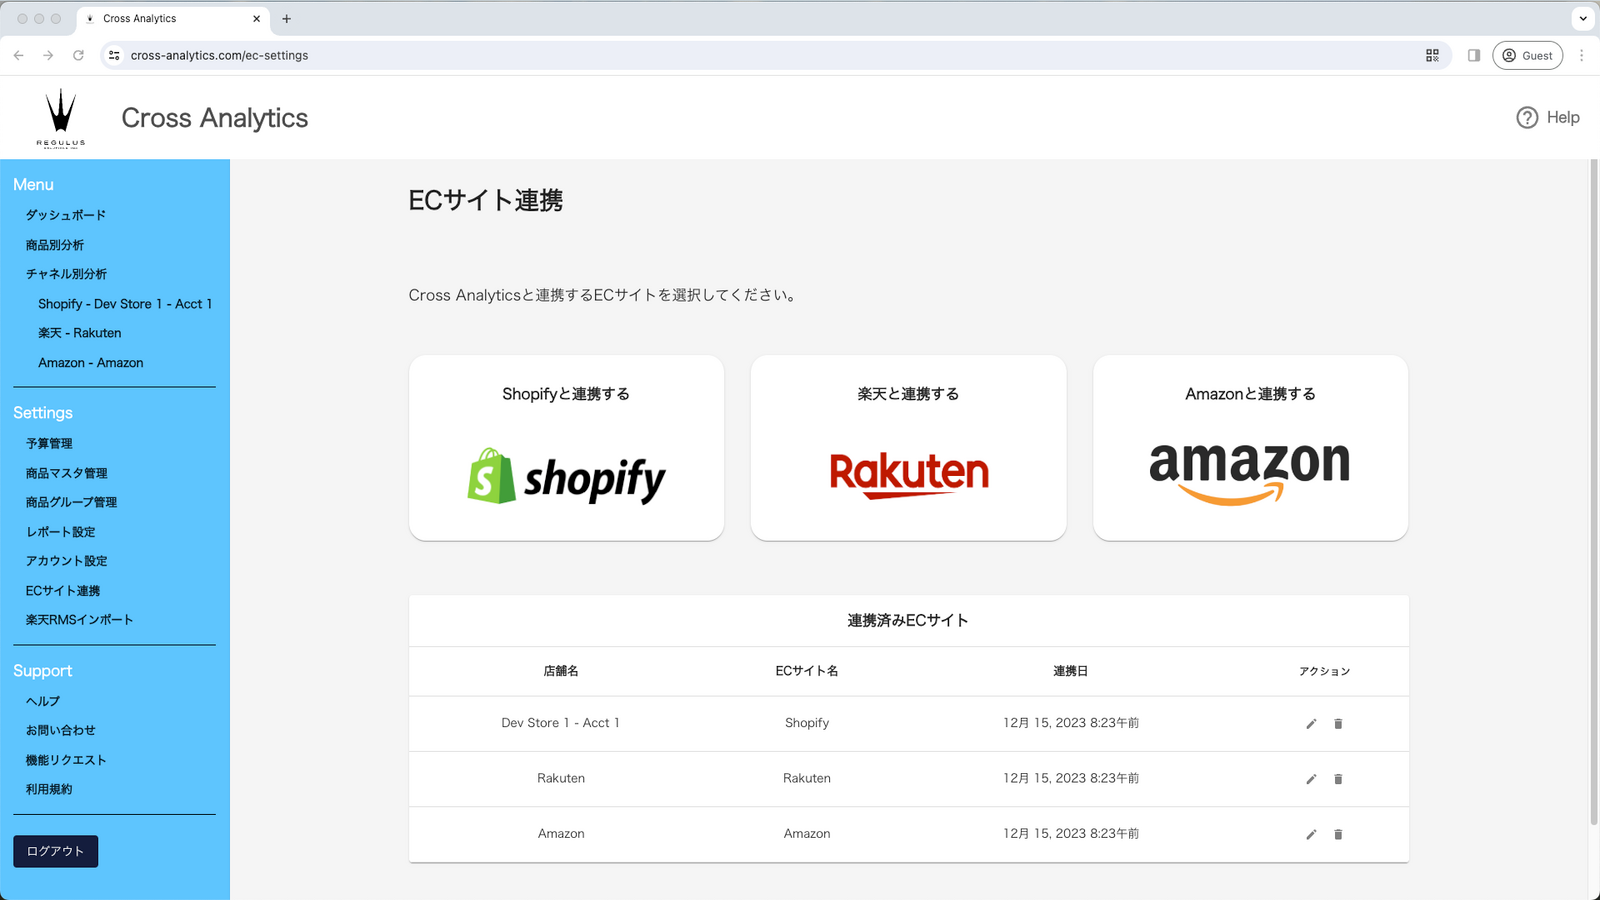 Benutzer können ihre Shops von drei verschiedenen E-Commerce-Seiten verknüpfen